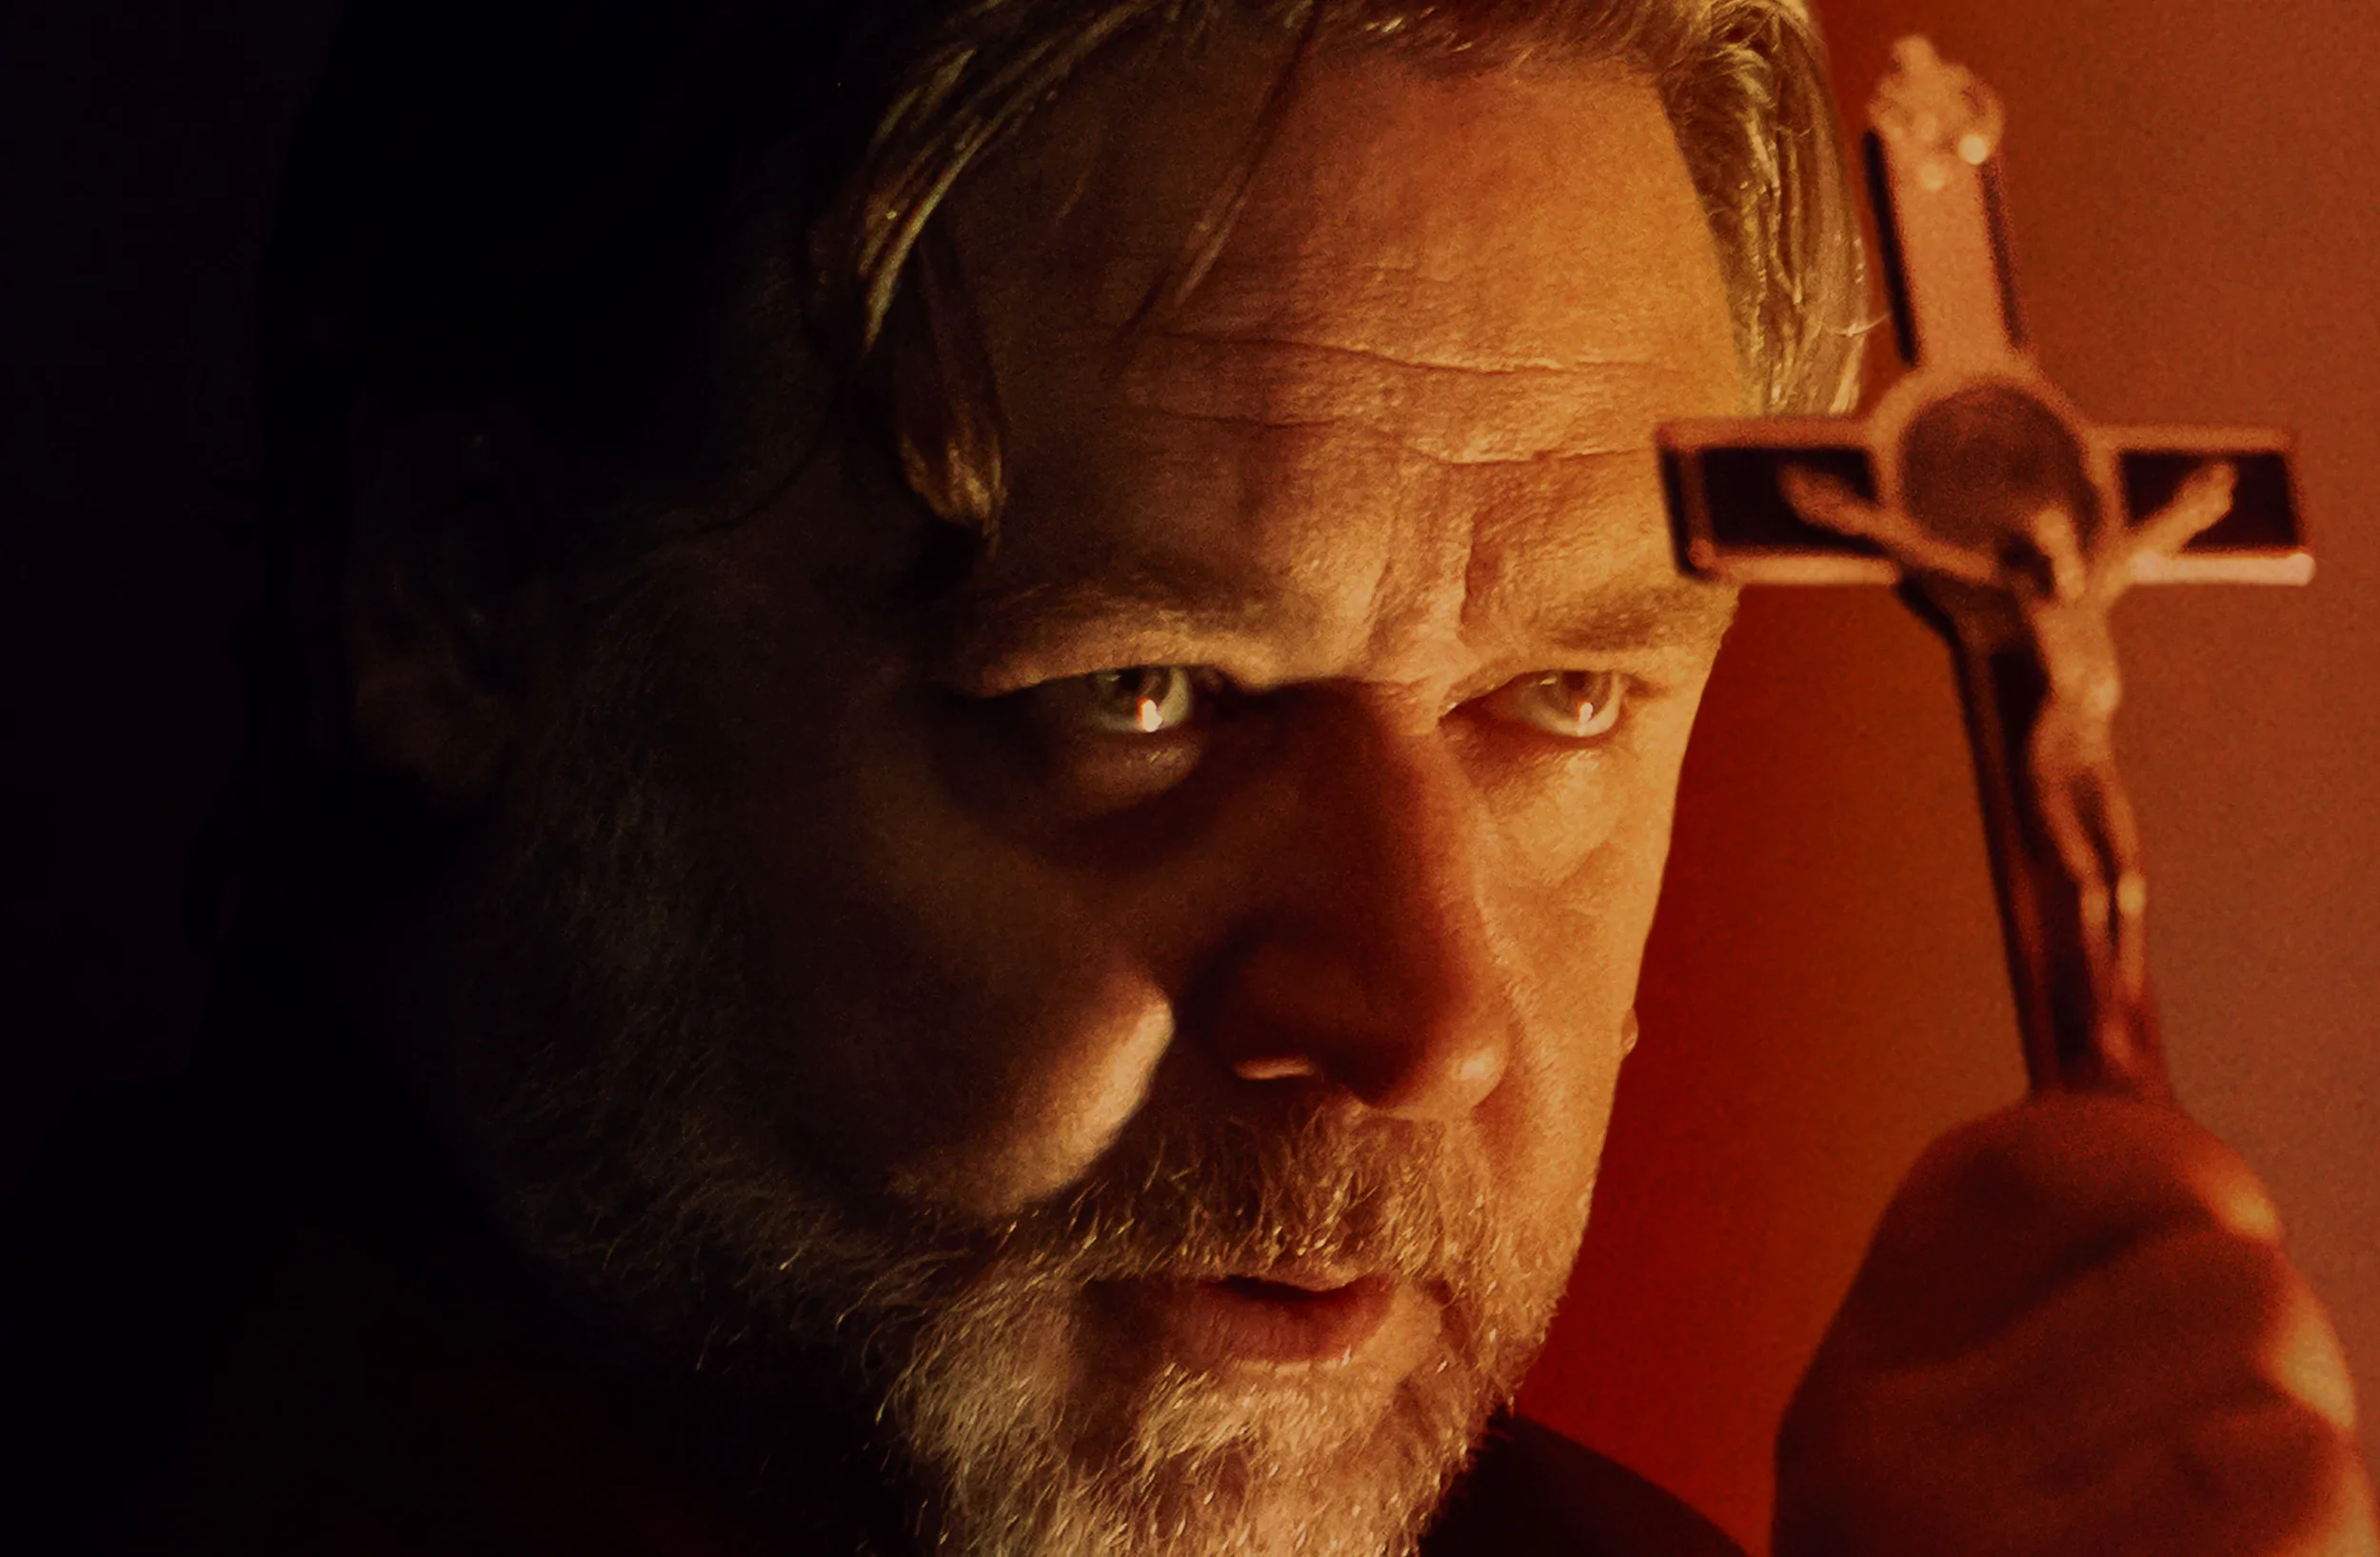 Russell Crowe w nowym horrorze Egzorcyzm to gwarancja rozrywki na najwyższym poziomie